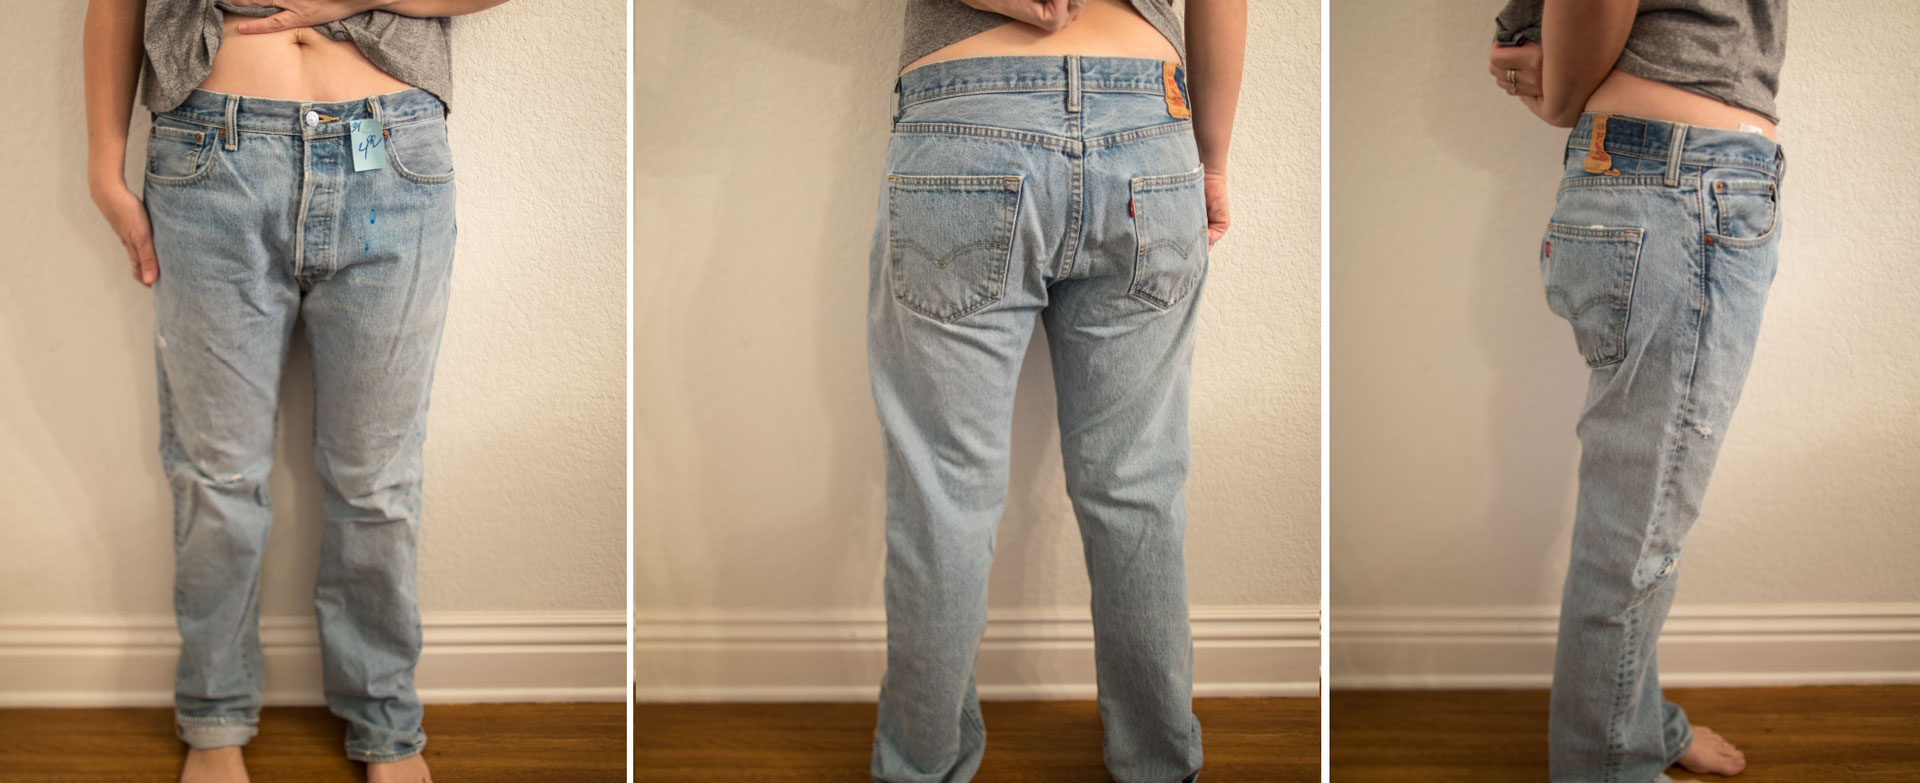 Jeans | Vintage Levi's Fit Guide 